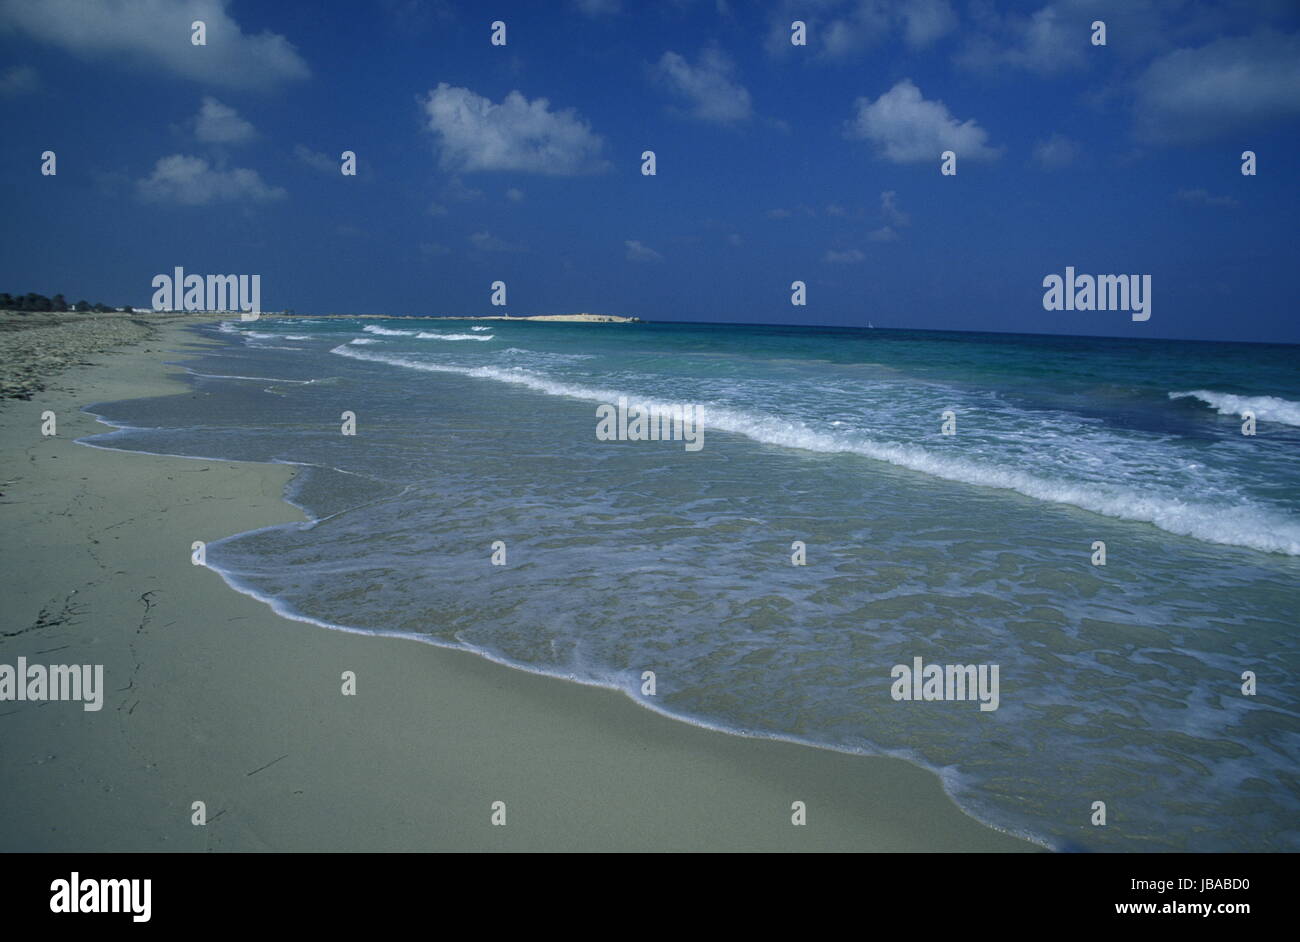 Ein Sandstrand Auf der Insel Jierba Im Sueden von Tunesien in Nordafrika. Stockfoto